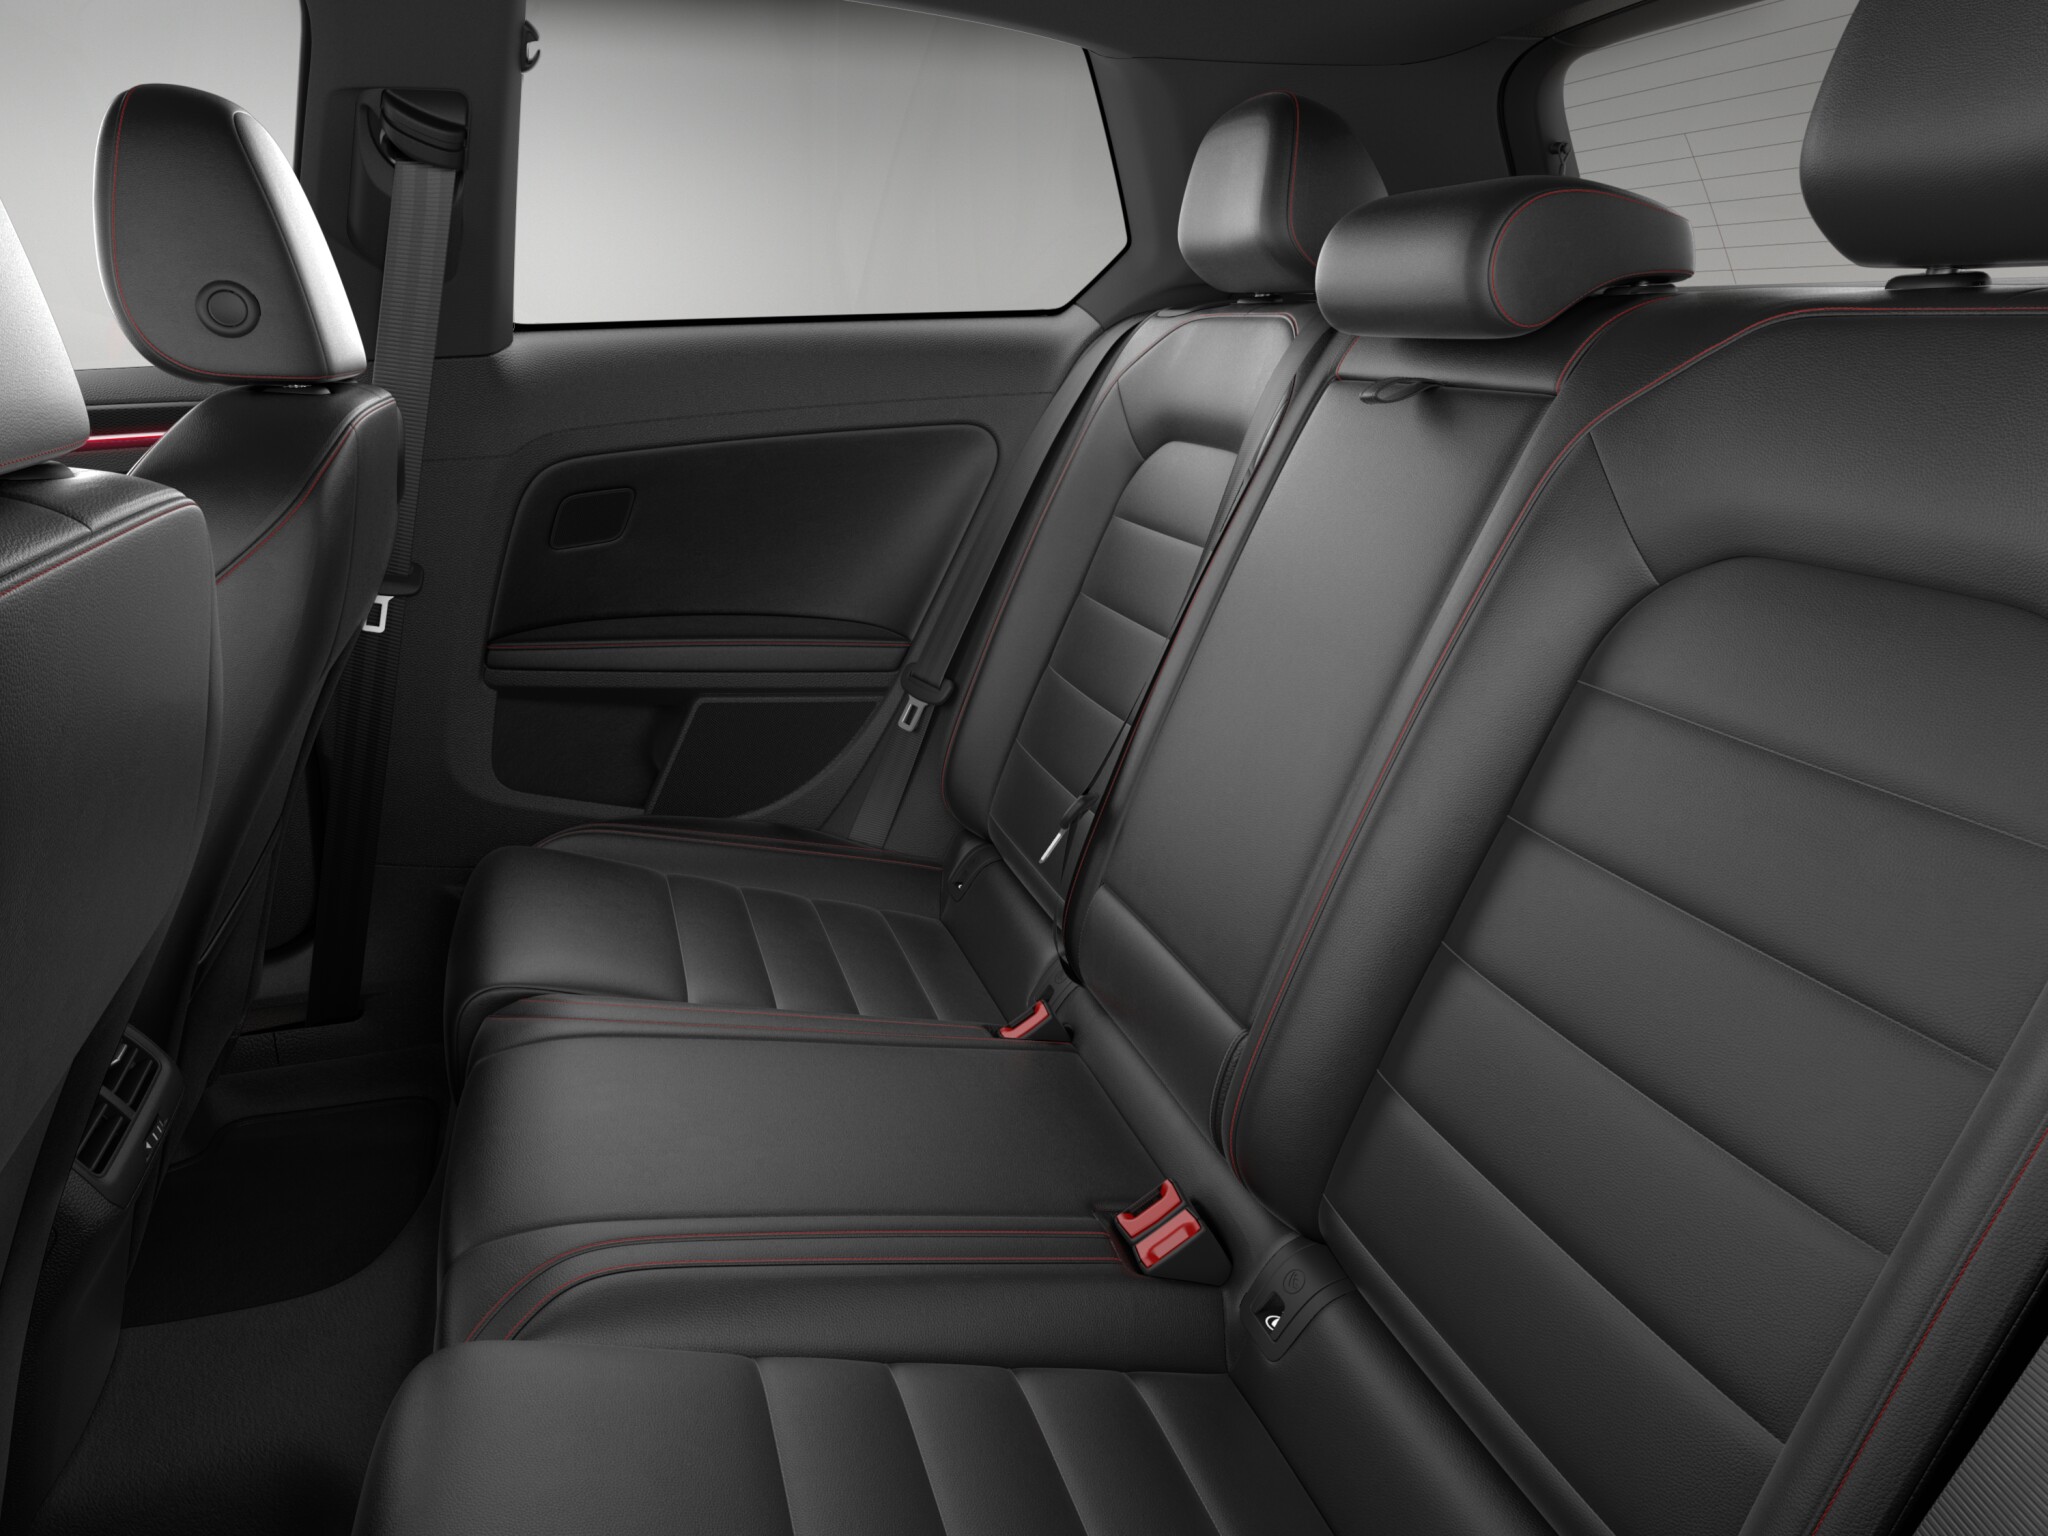 Volkswagen Golf GTI SE 2 Door interior rear seat view